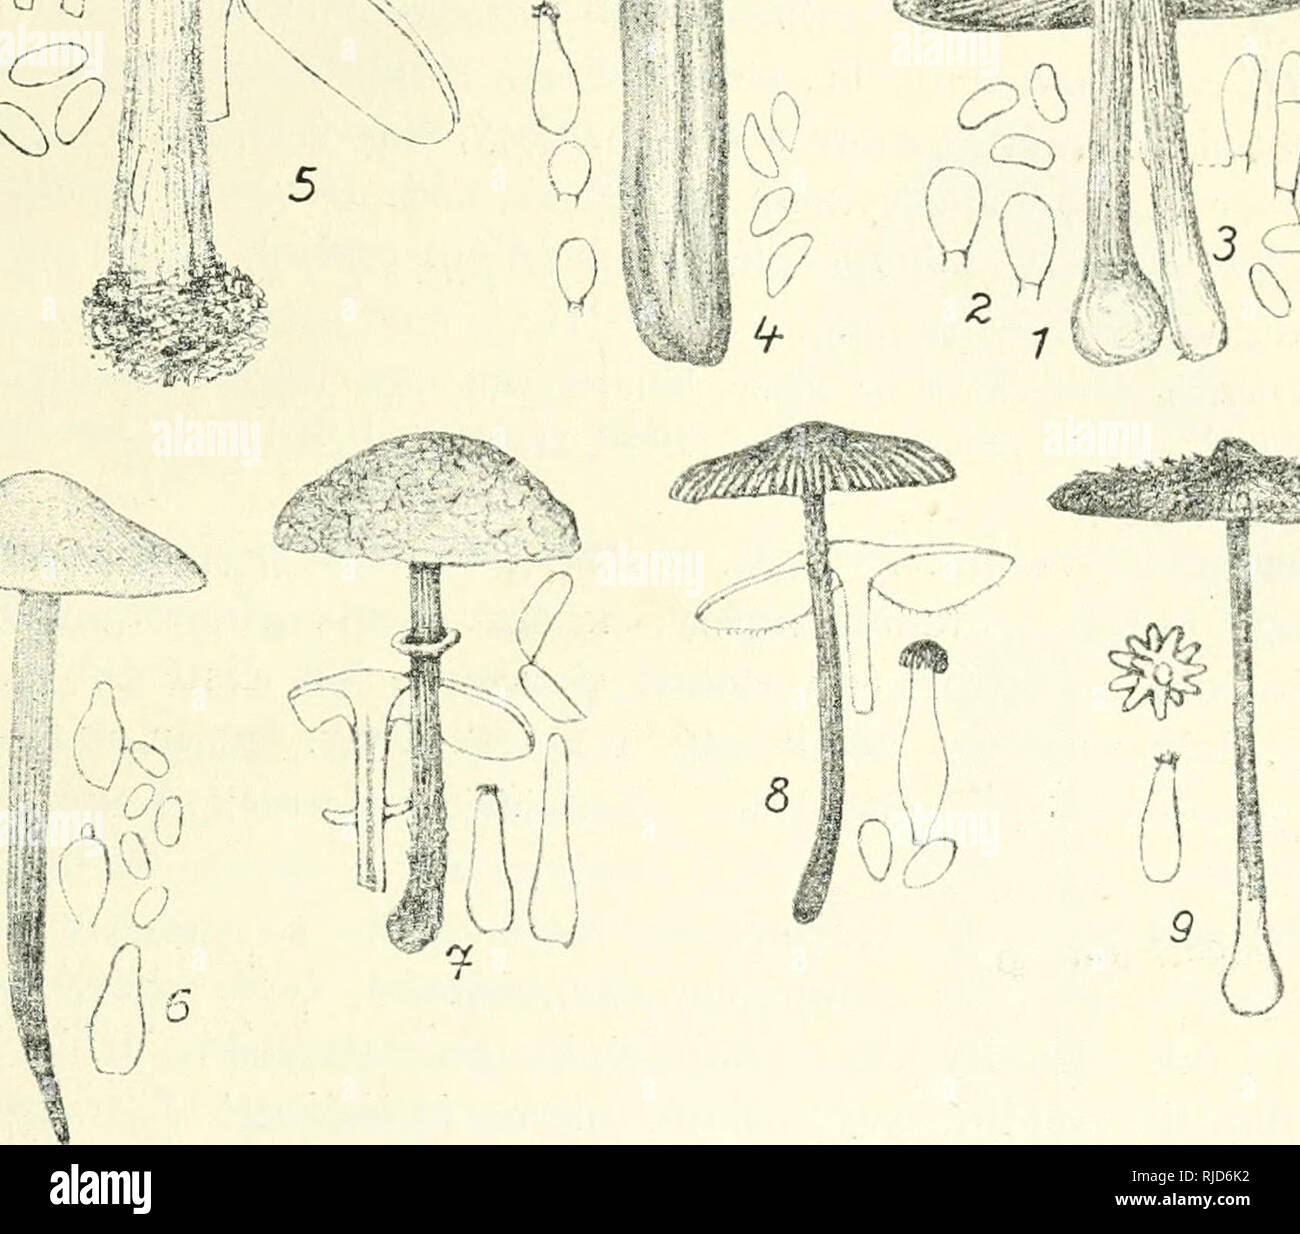 . Cesk houby. Fungi -- Czech Republic. m ^. cJbr. b3. I. Inocybe fastigiata Schff., 2. I. rimosa Bull., pouze výtr. a cyst„ 3. I. caesariata Fr., 4. I cervicolor Pers., 5. I. Bongardii Wcin., 6. I. corcon- tica 'el., 7. I. annulata Vel., 8. I. Whitei B. Br., g. I. calospora Quel.. — Vše slabé zmenš. oblené, sv?tle sede, pak hn?dé, s b?lavým ost?ím. Duž. bílá. odporné louhovité páchnoucí. Výtr. zak?iven? tup? ledvinité, 9—lo ^l, Cyst. íiadmut? kulovité. V tráv? v zahradách, na pahorcích, v lesích všude hojn? po celé léto. Snadno poznatelná houba po kl. žlutavém, vláknit? žíhaném a odporném zá- Stock Photo